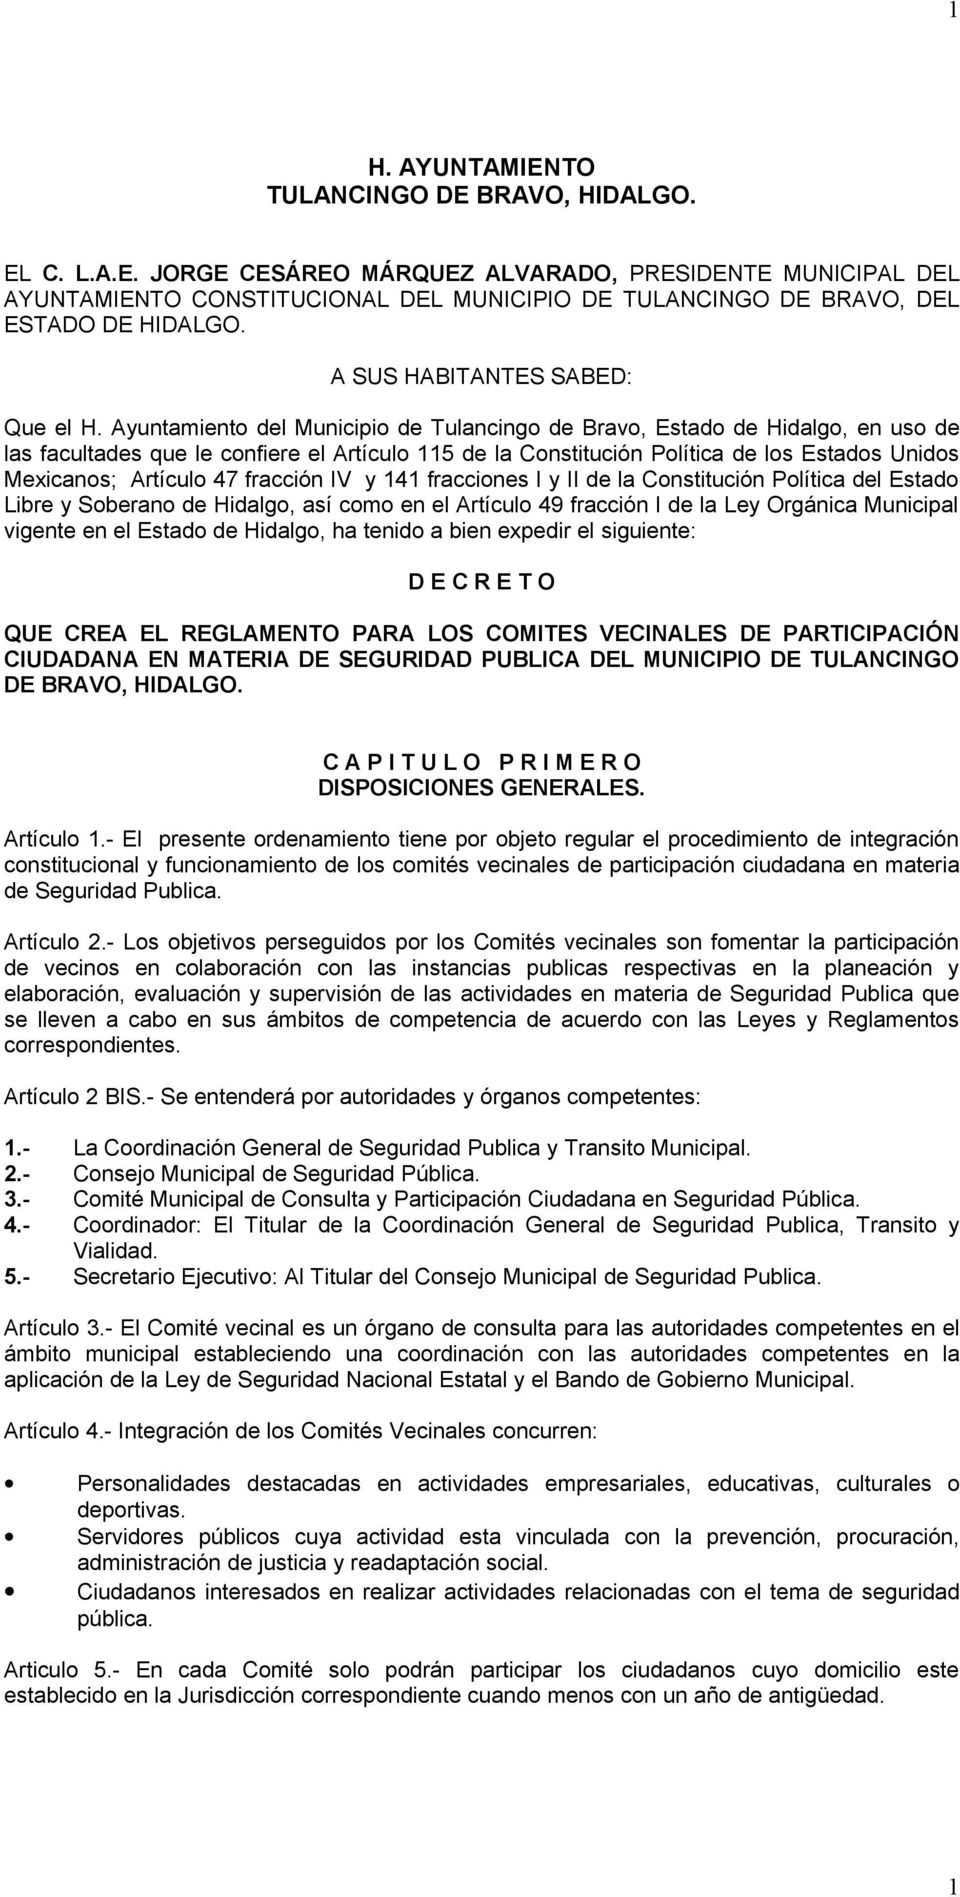 Ayuntamiento del Municipio de Tulancingo de Bravo, Estado de Hidalgo, en uso de las facultades que le confiere el Artículo 115 de la Constitución Política de los Estados Unidos Mexicanos; Artículo 47